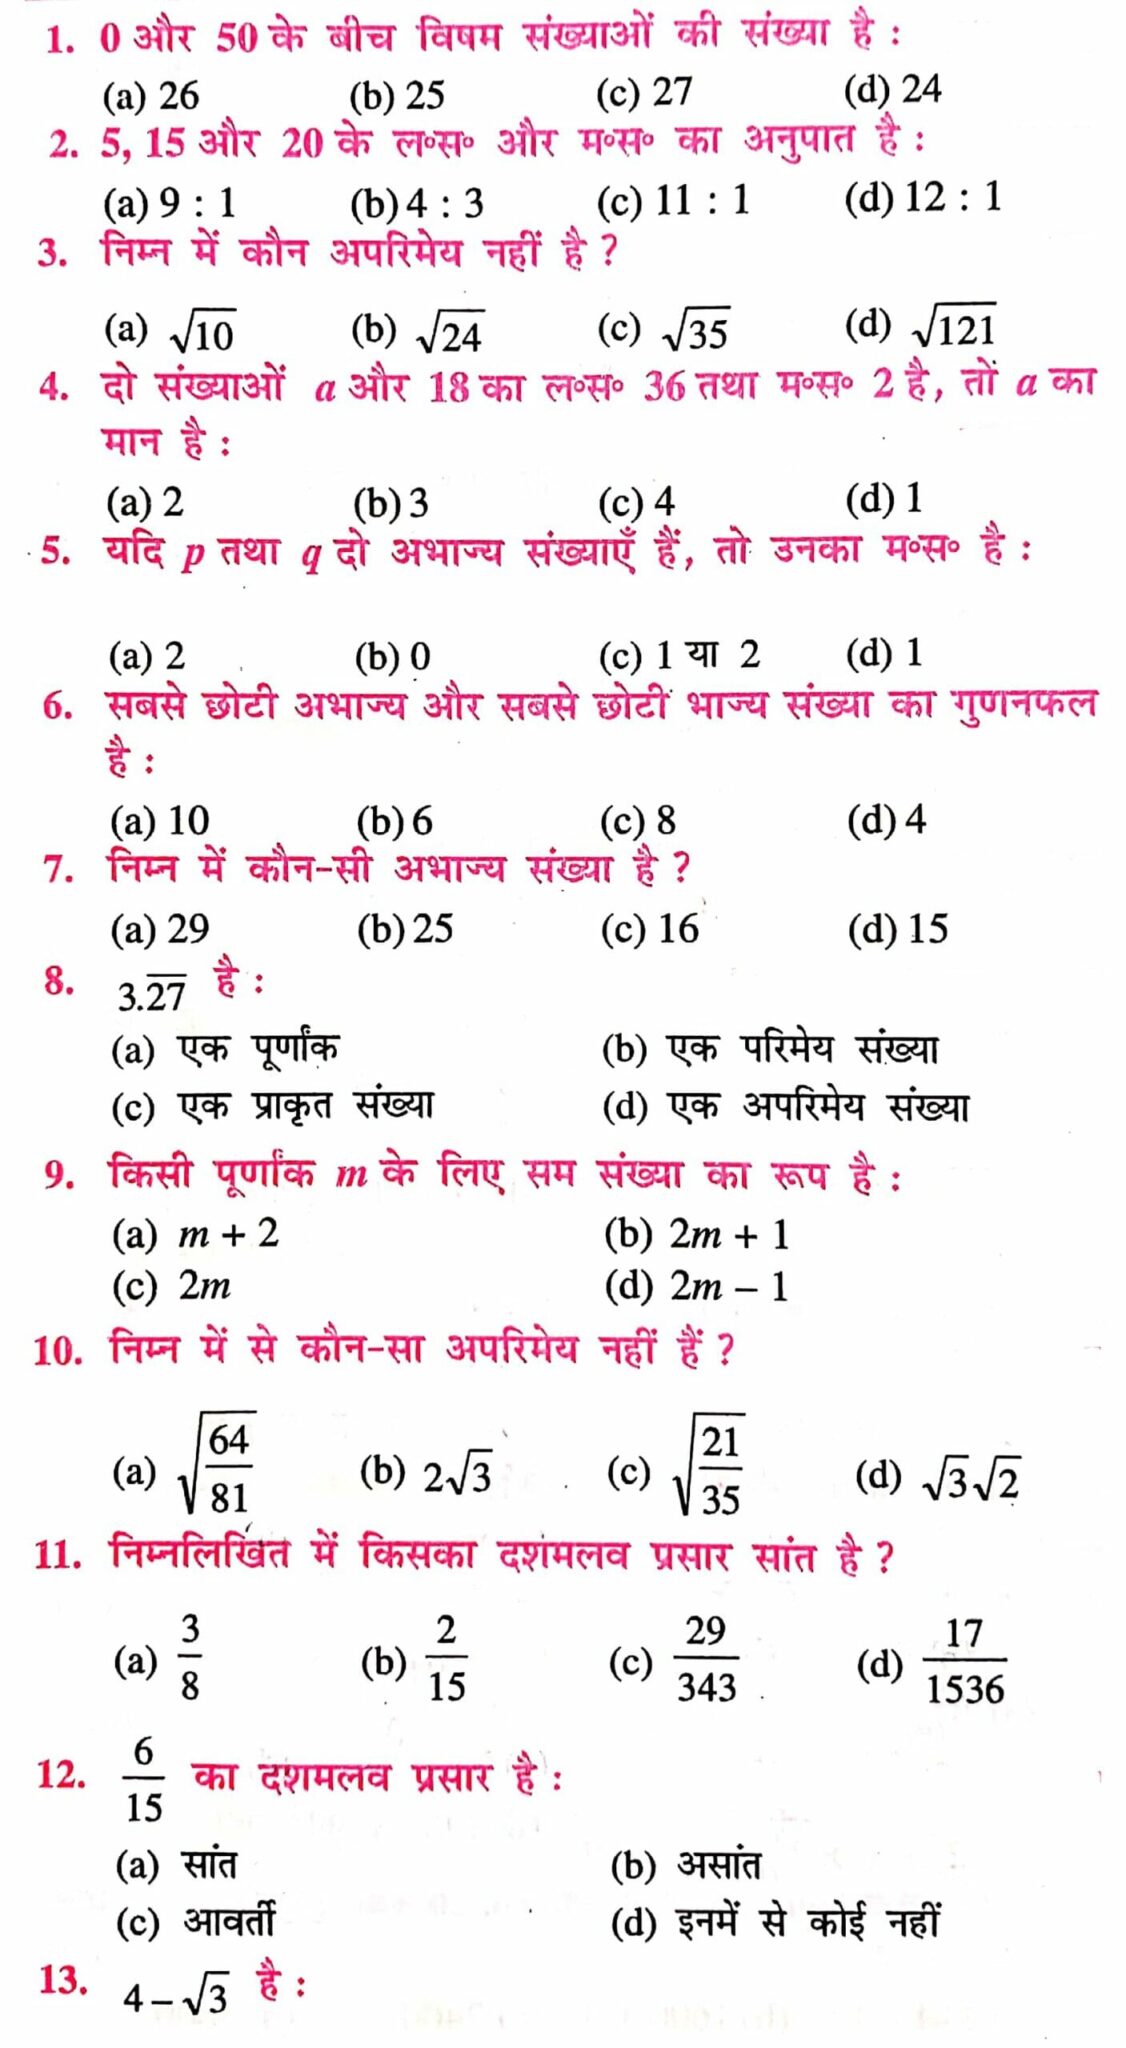 vastavik sankhya class 10th in hindi |वास्तविक संख्याएँ कक्षा 10 Pdf|प्रश्नावली 1.1 कक्षा 10|class 10th math objective question in hindi | class 10th math chapter 1 hindi | कक्षा 10 गणित के लिए एनसीईआरटी समाधान हिंदी में अध्याय 1